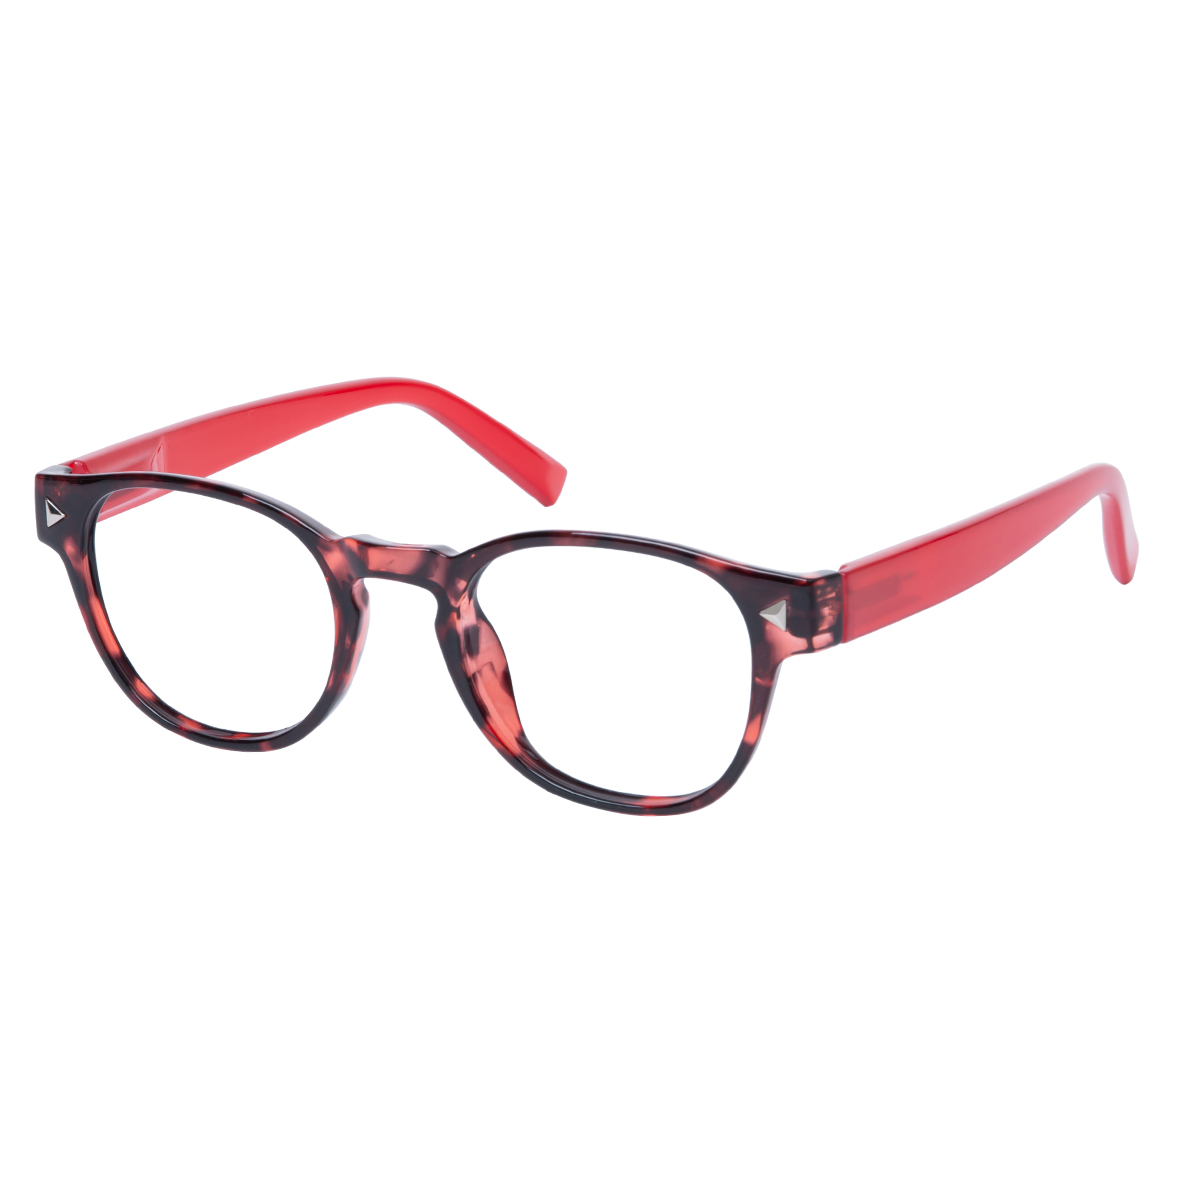 Micaela - Round Tortoiseshell-Red Reading Glasses for Women